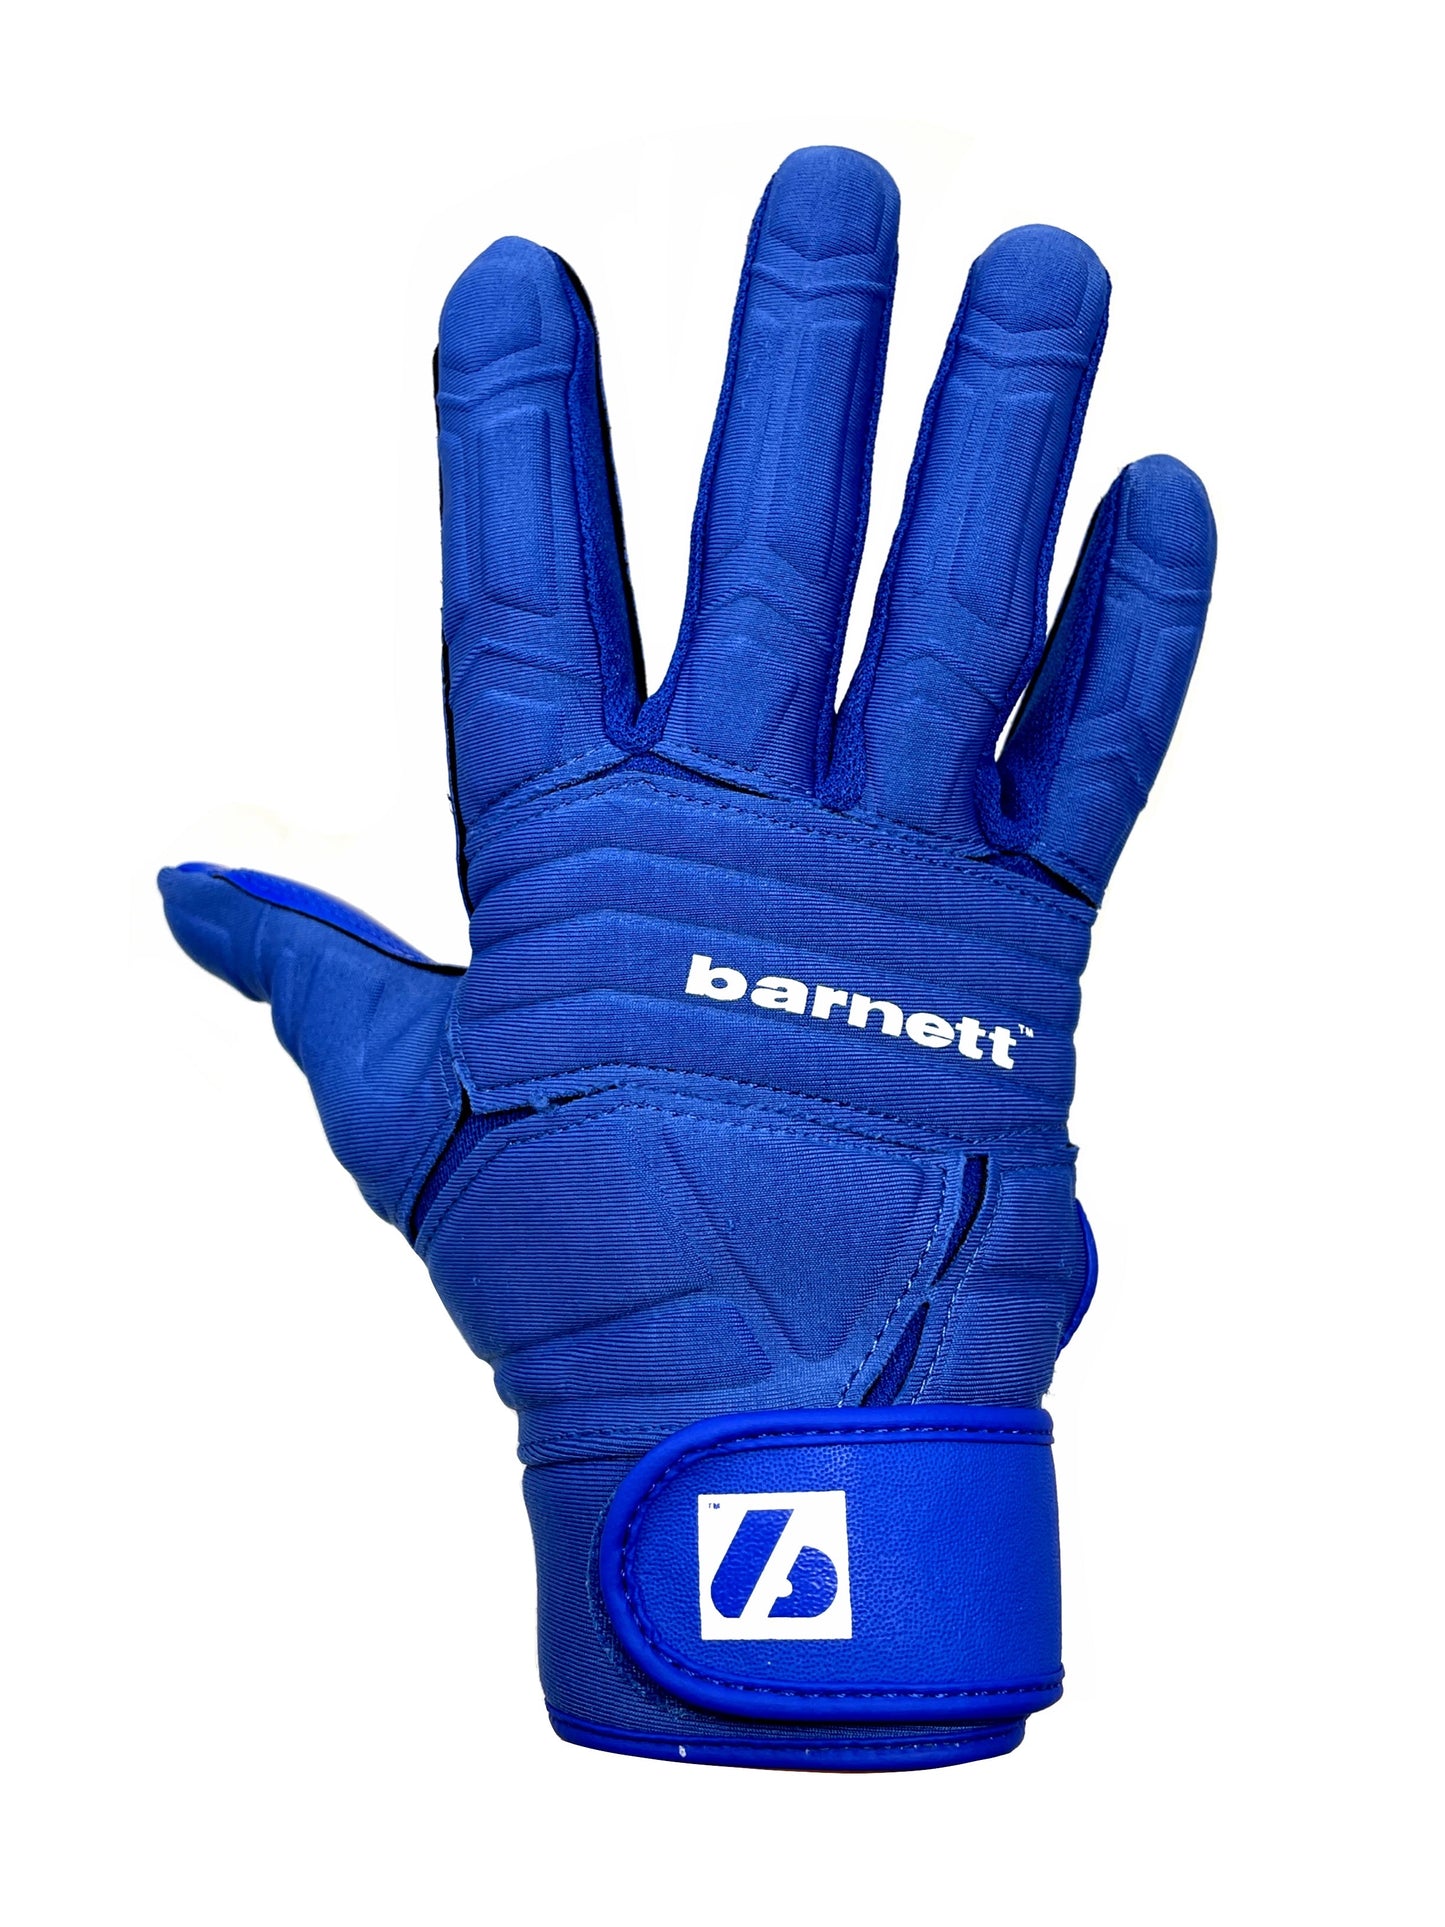 FLG-03 pro linemen rękawiczki do futbolu amerykańskiego, OL,DL, Niebieski